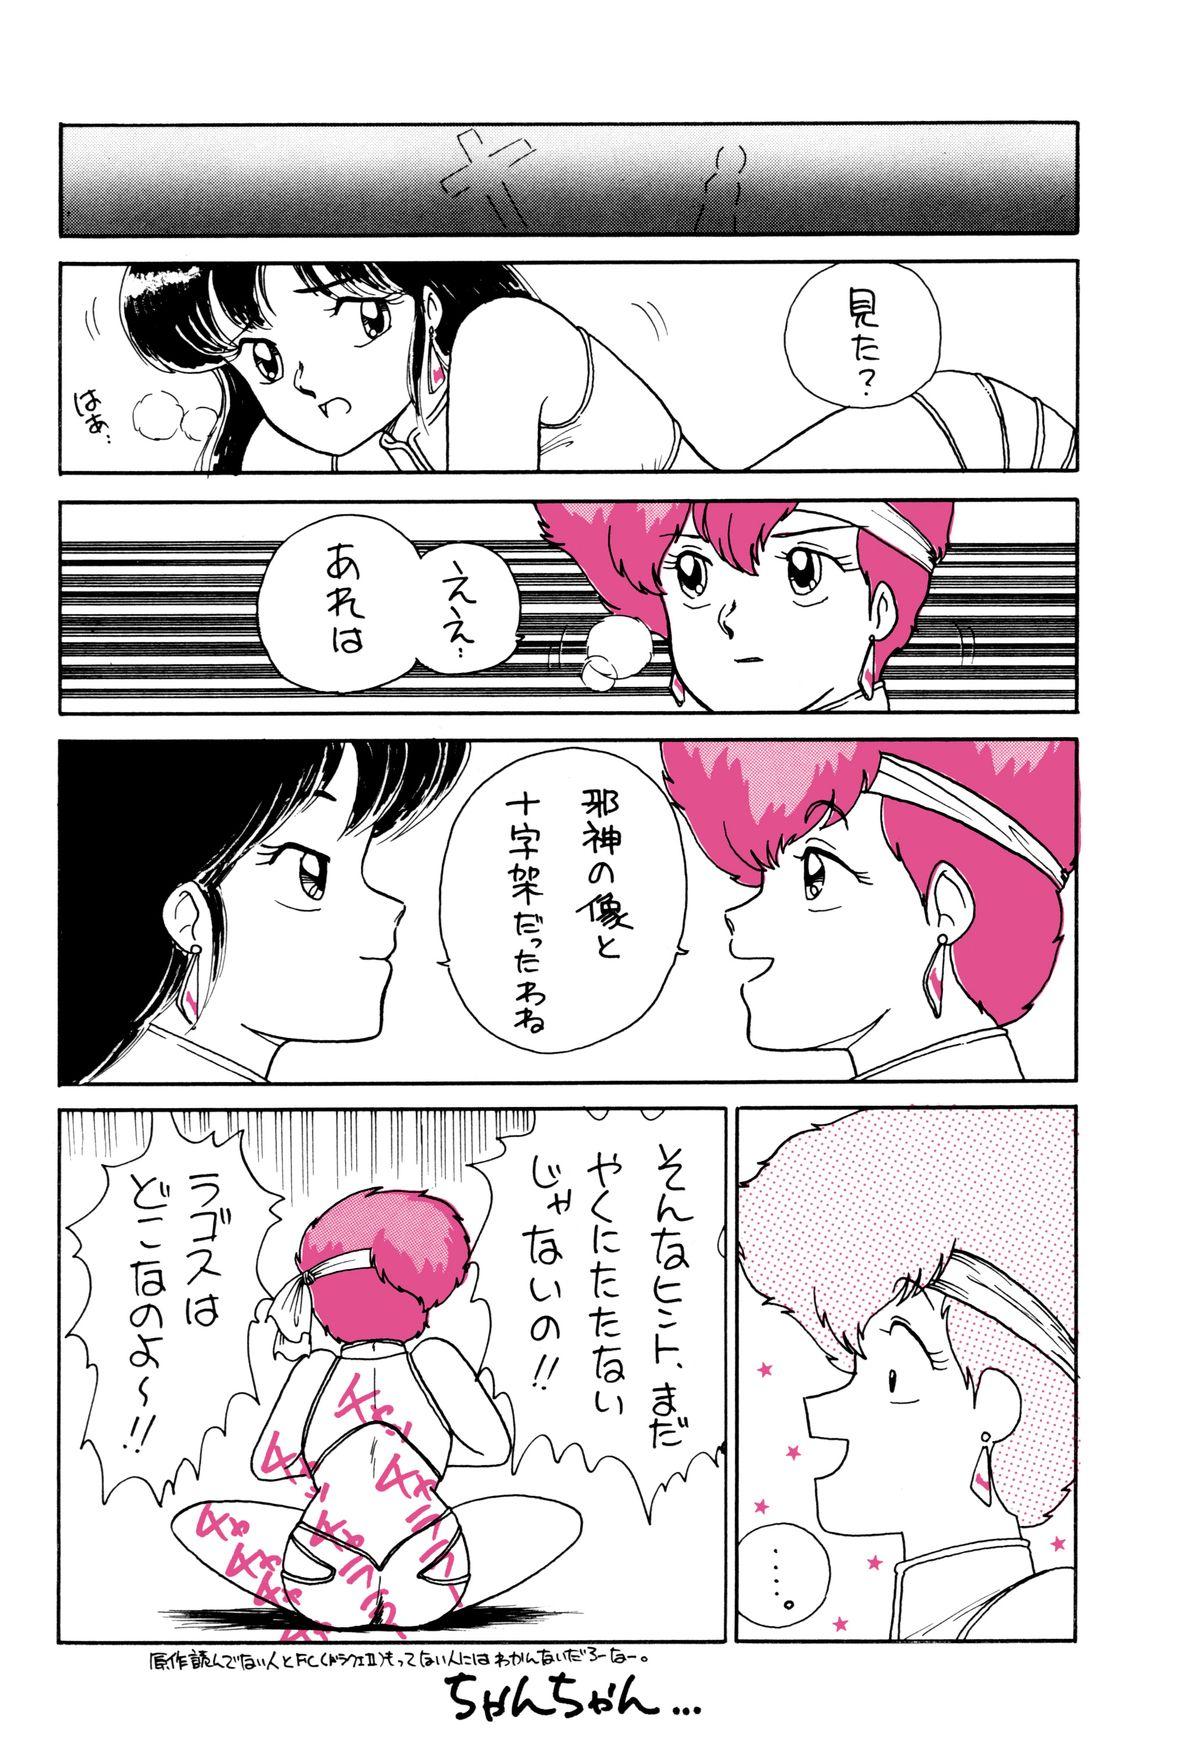 Perfect Pussy Opepepe 6 - Urusei yatsura Dirty pair Maison ikkoku Gundam zz Project a-ko Machine robo Kyuukyoku choujin r Glamcore - Page 7